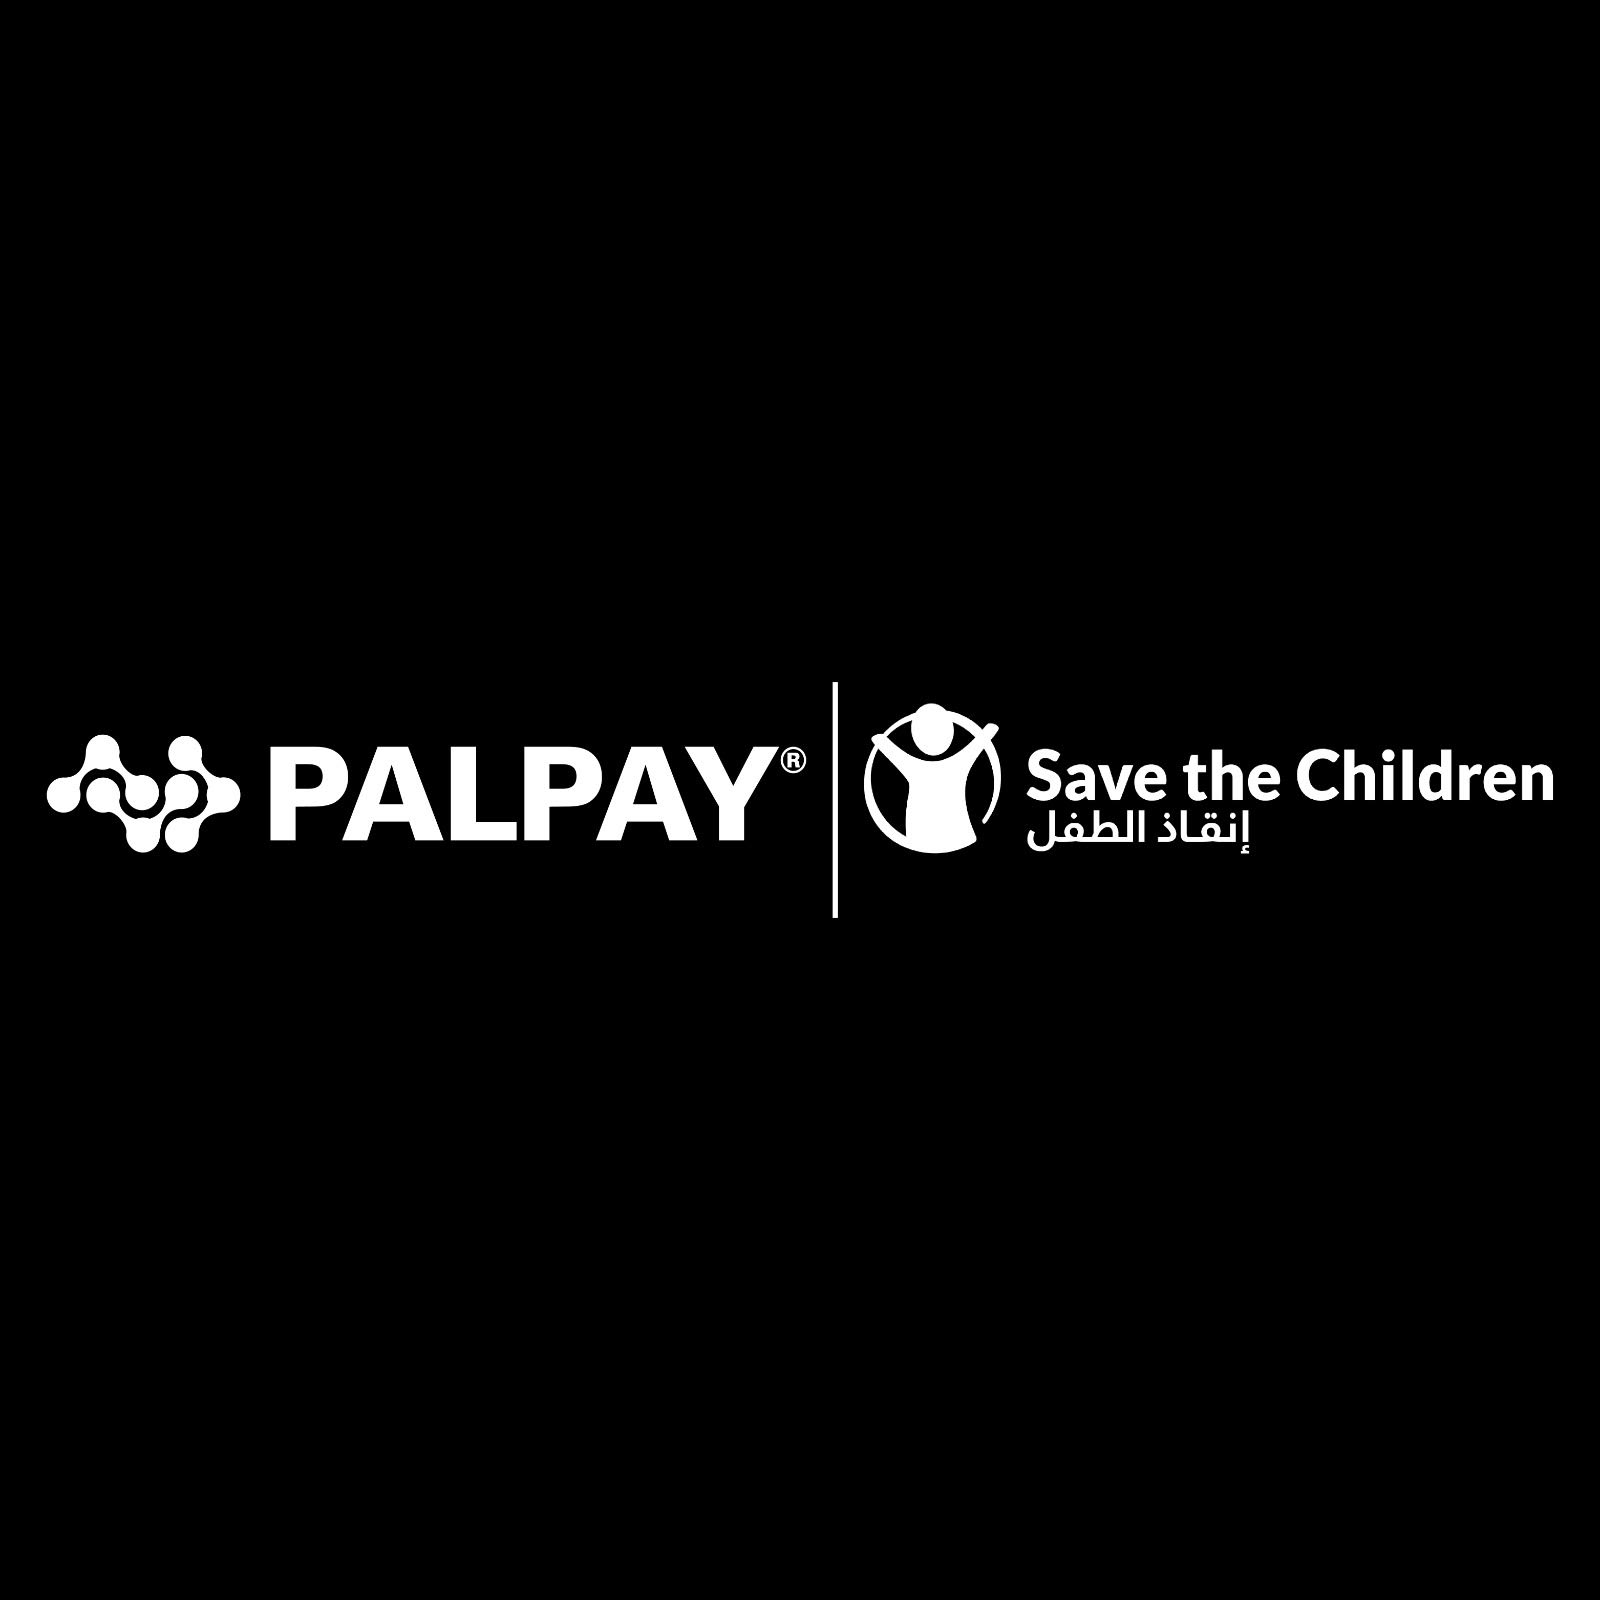  ضمن الجسر الإغاثي لمجموعة بنك فلسطين لمساندة أهلنا في غزة شركة PALPAY تتبرع لصالح 350 عائلة في غزة من خلال مؤسسة إنقاذ الطفل الدولية